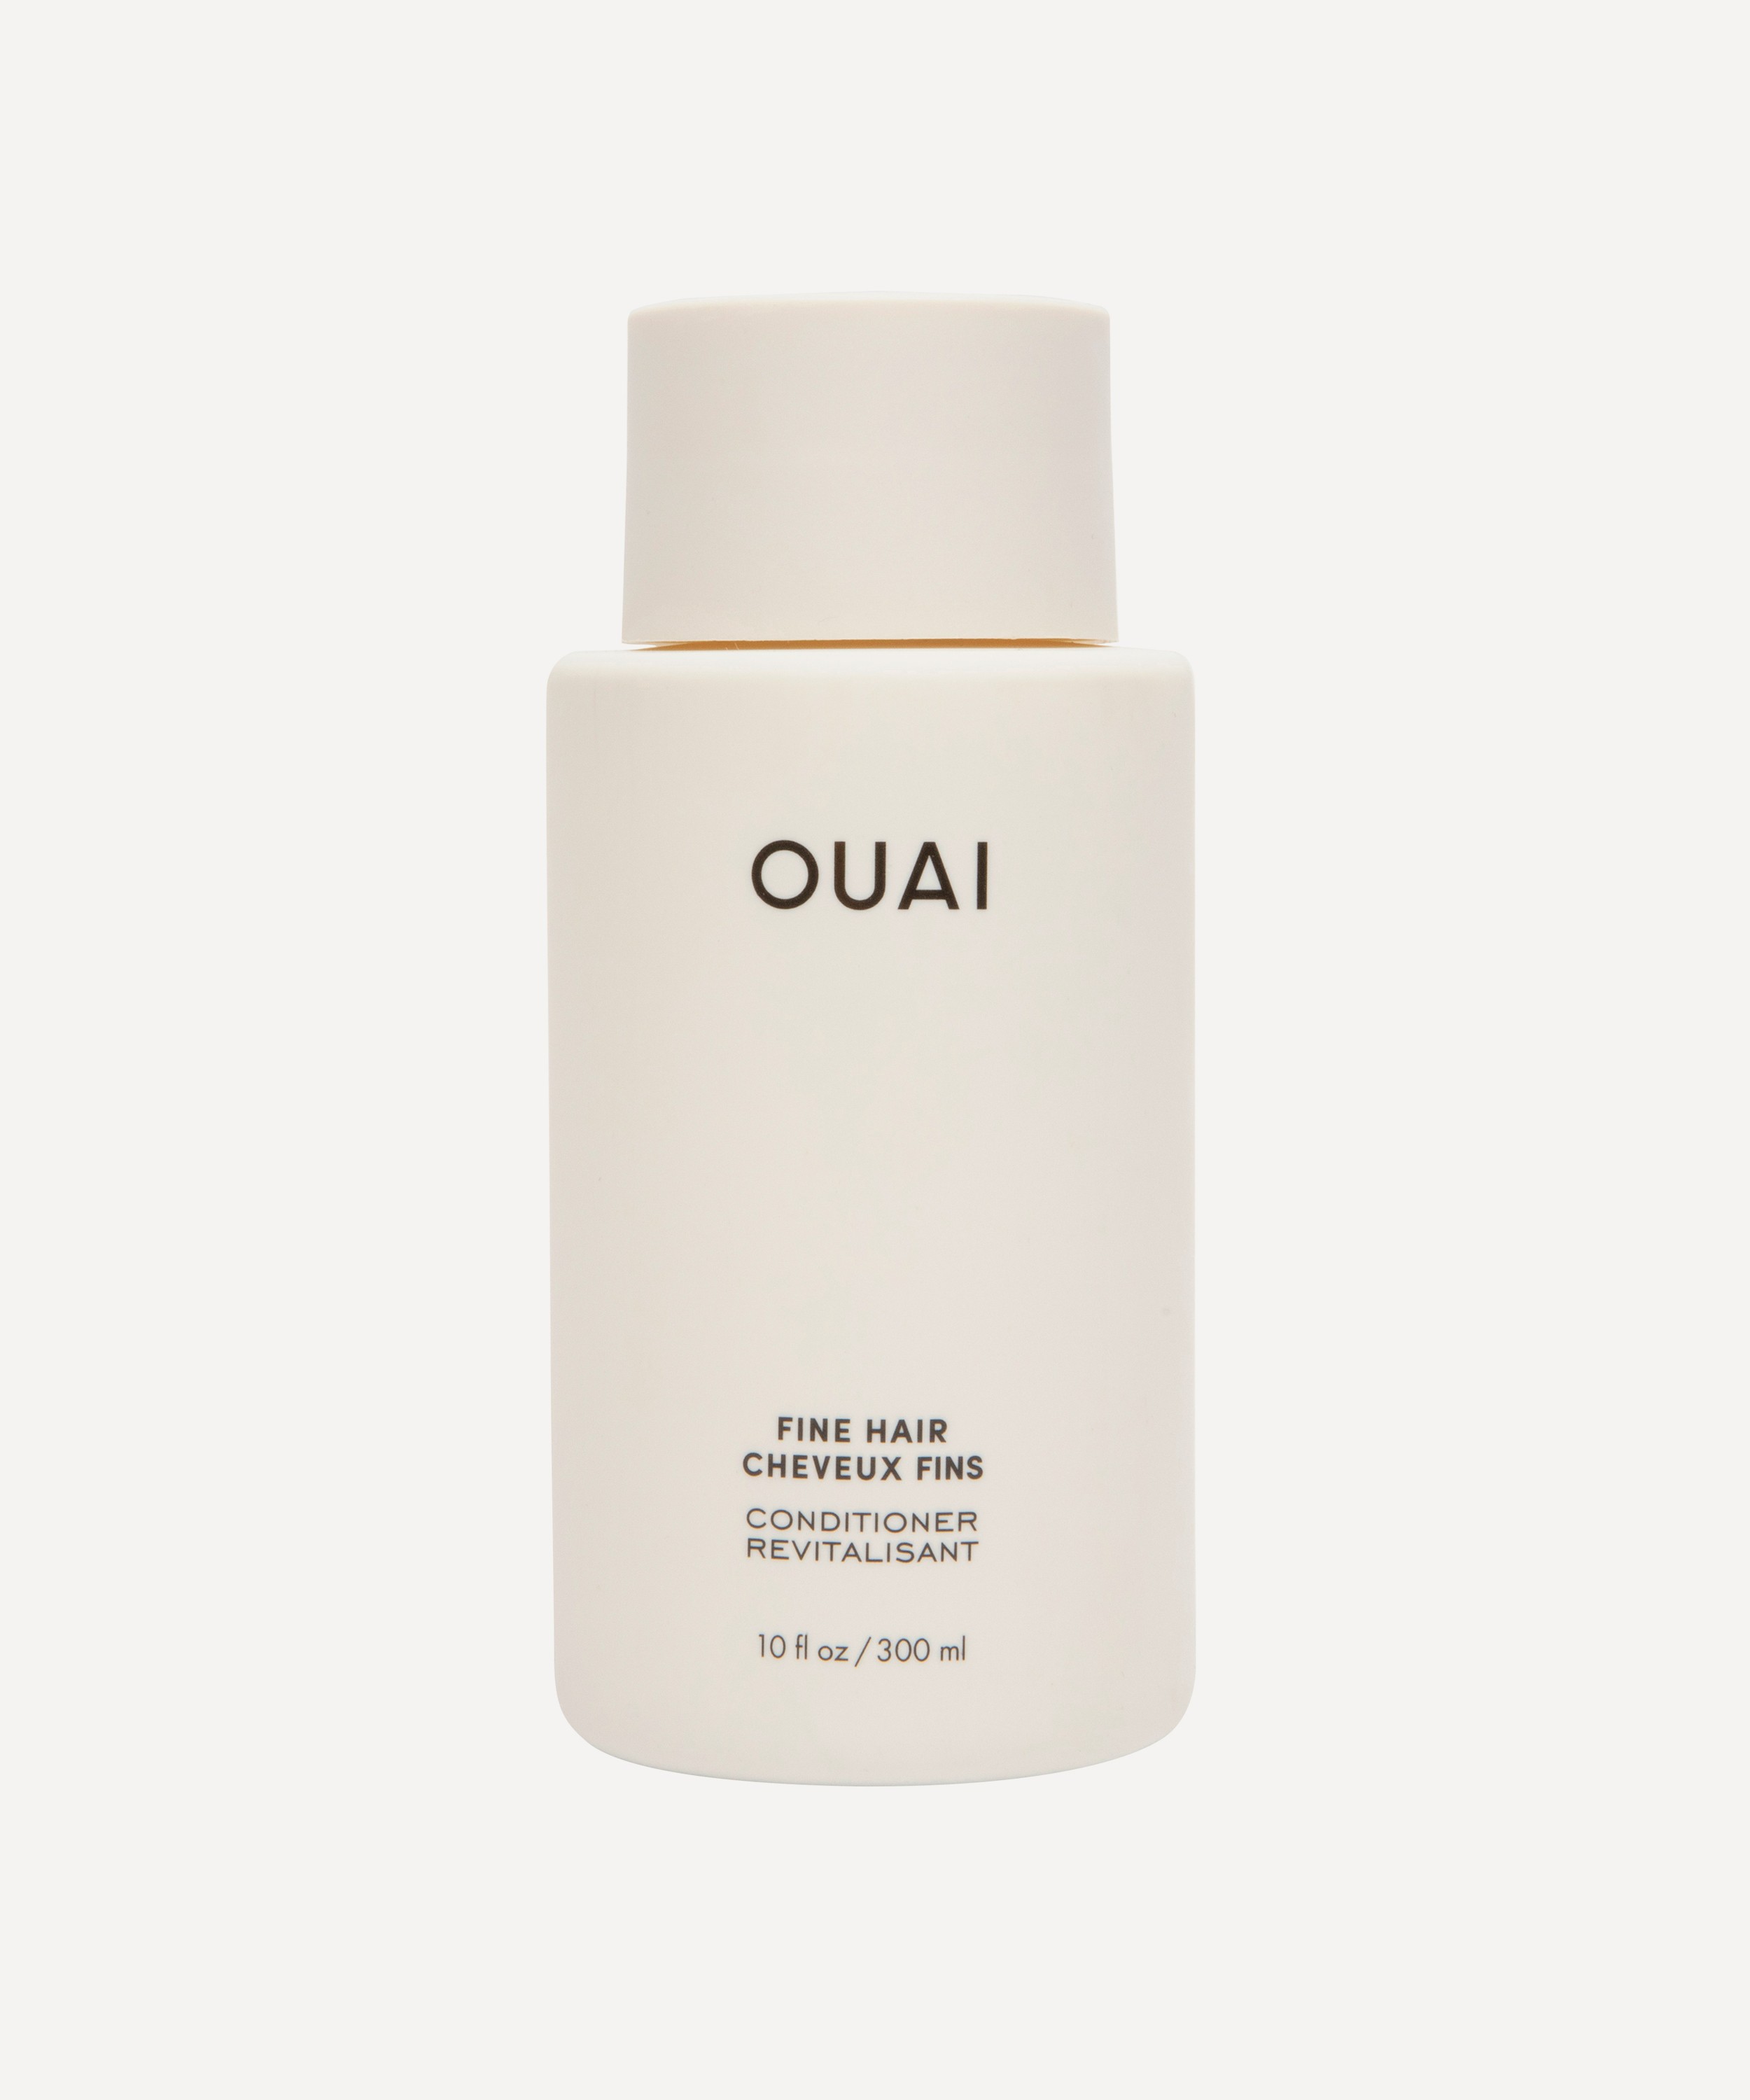 OUAI - Fine Hair Conditioner 300ml